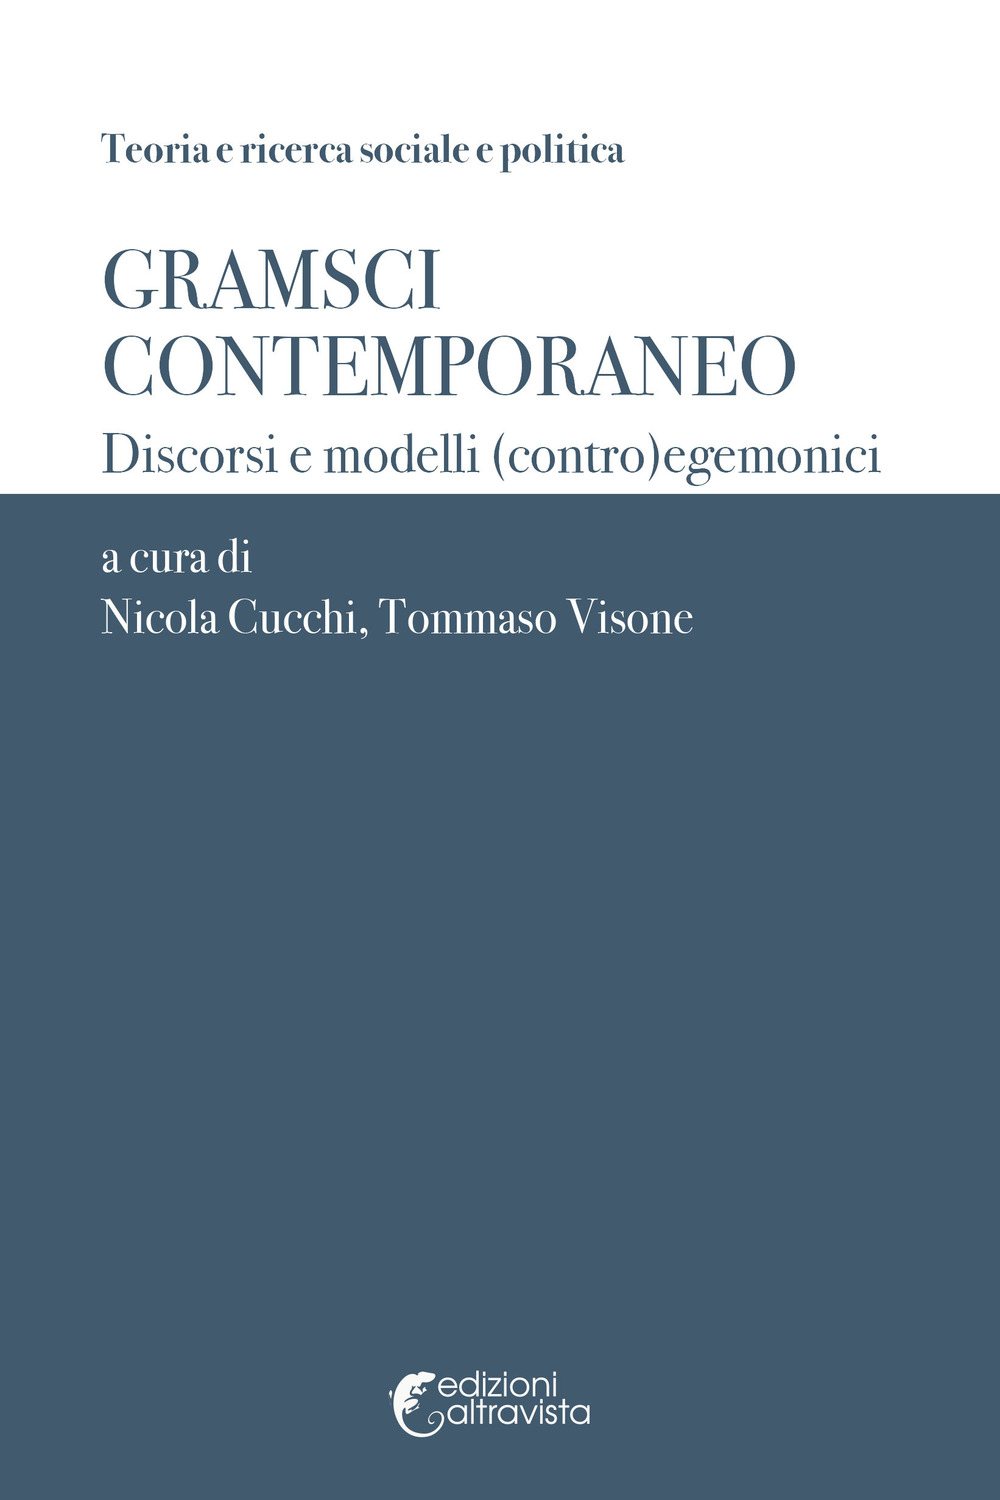 Gramsci contemporaneo. Discorsi e modelli (contro)egemonici